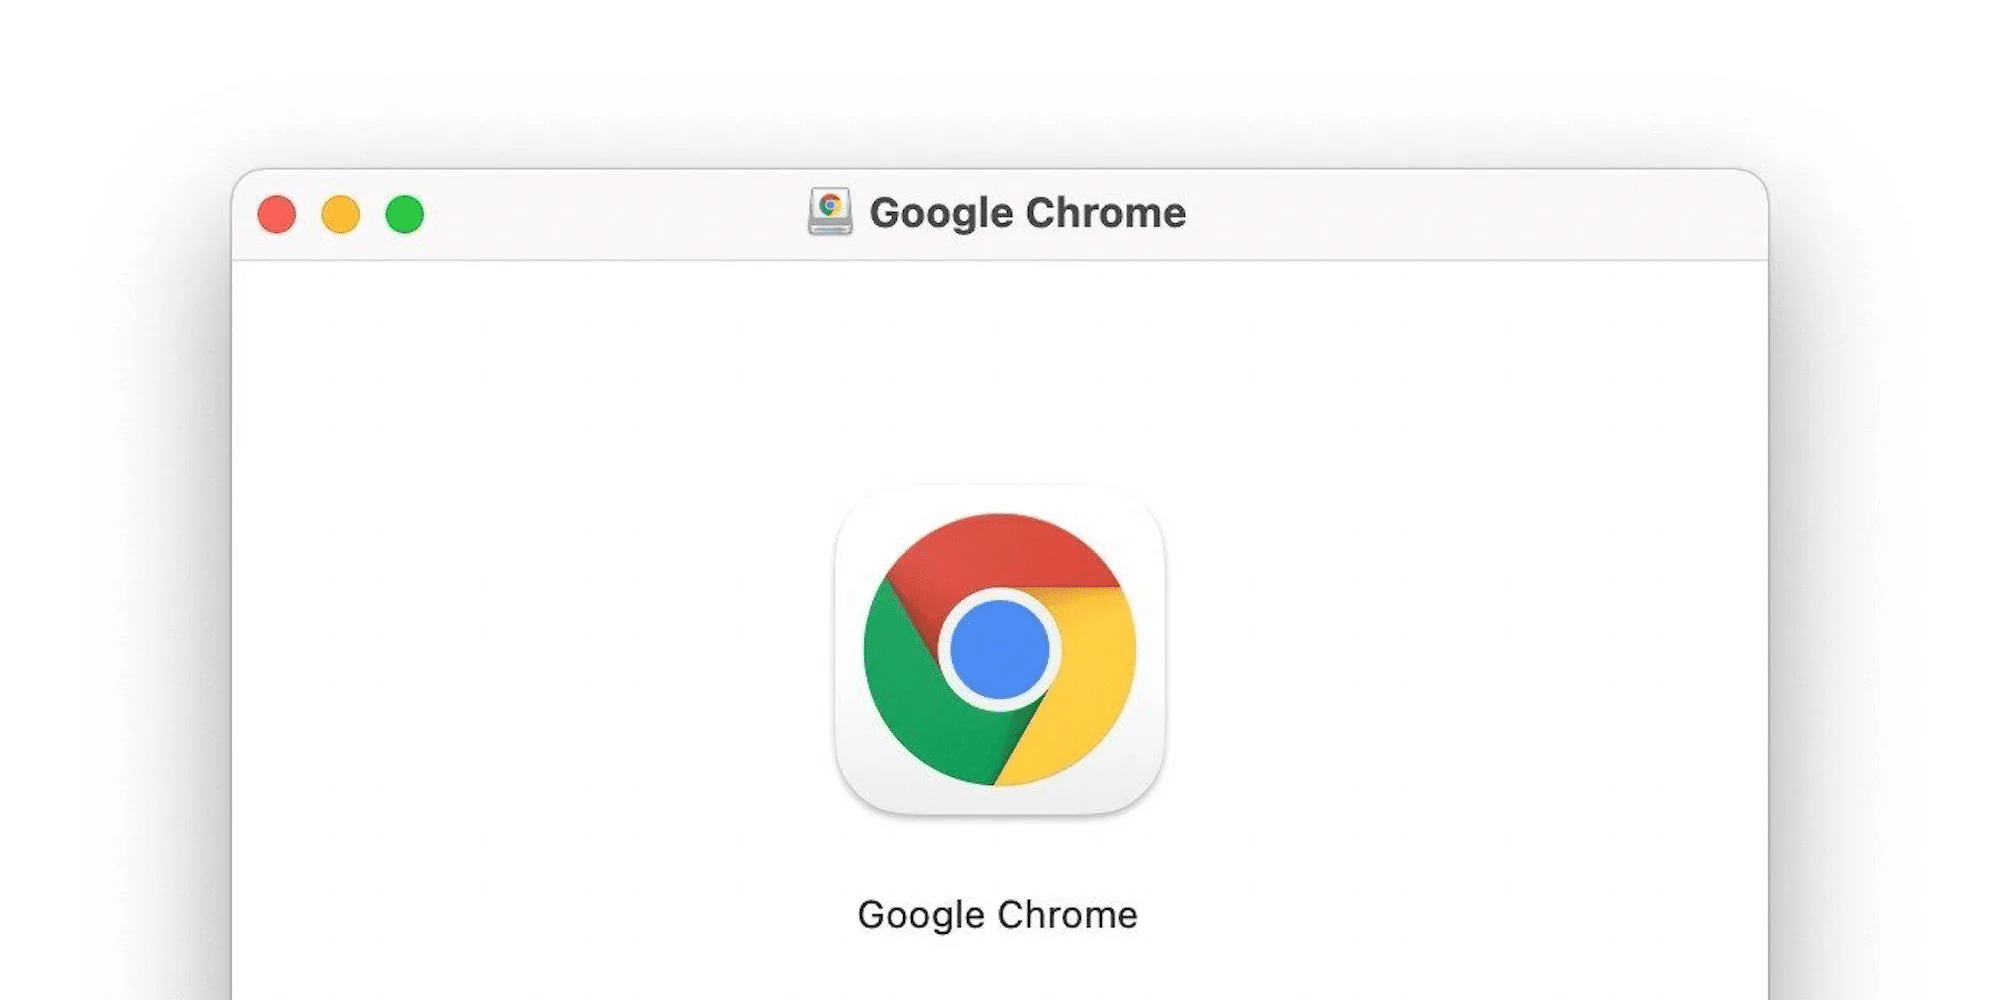 Google libera versão final do Chrome 11